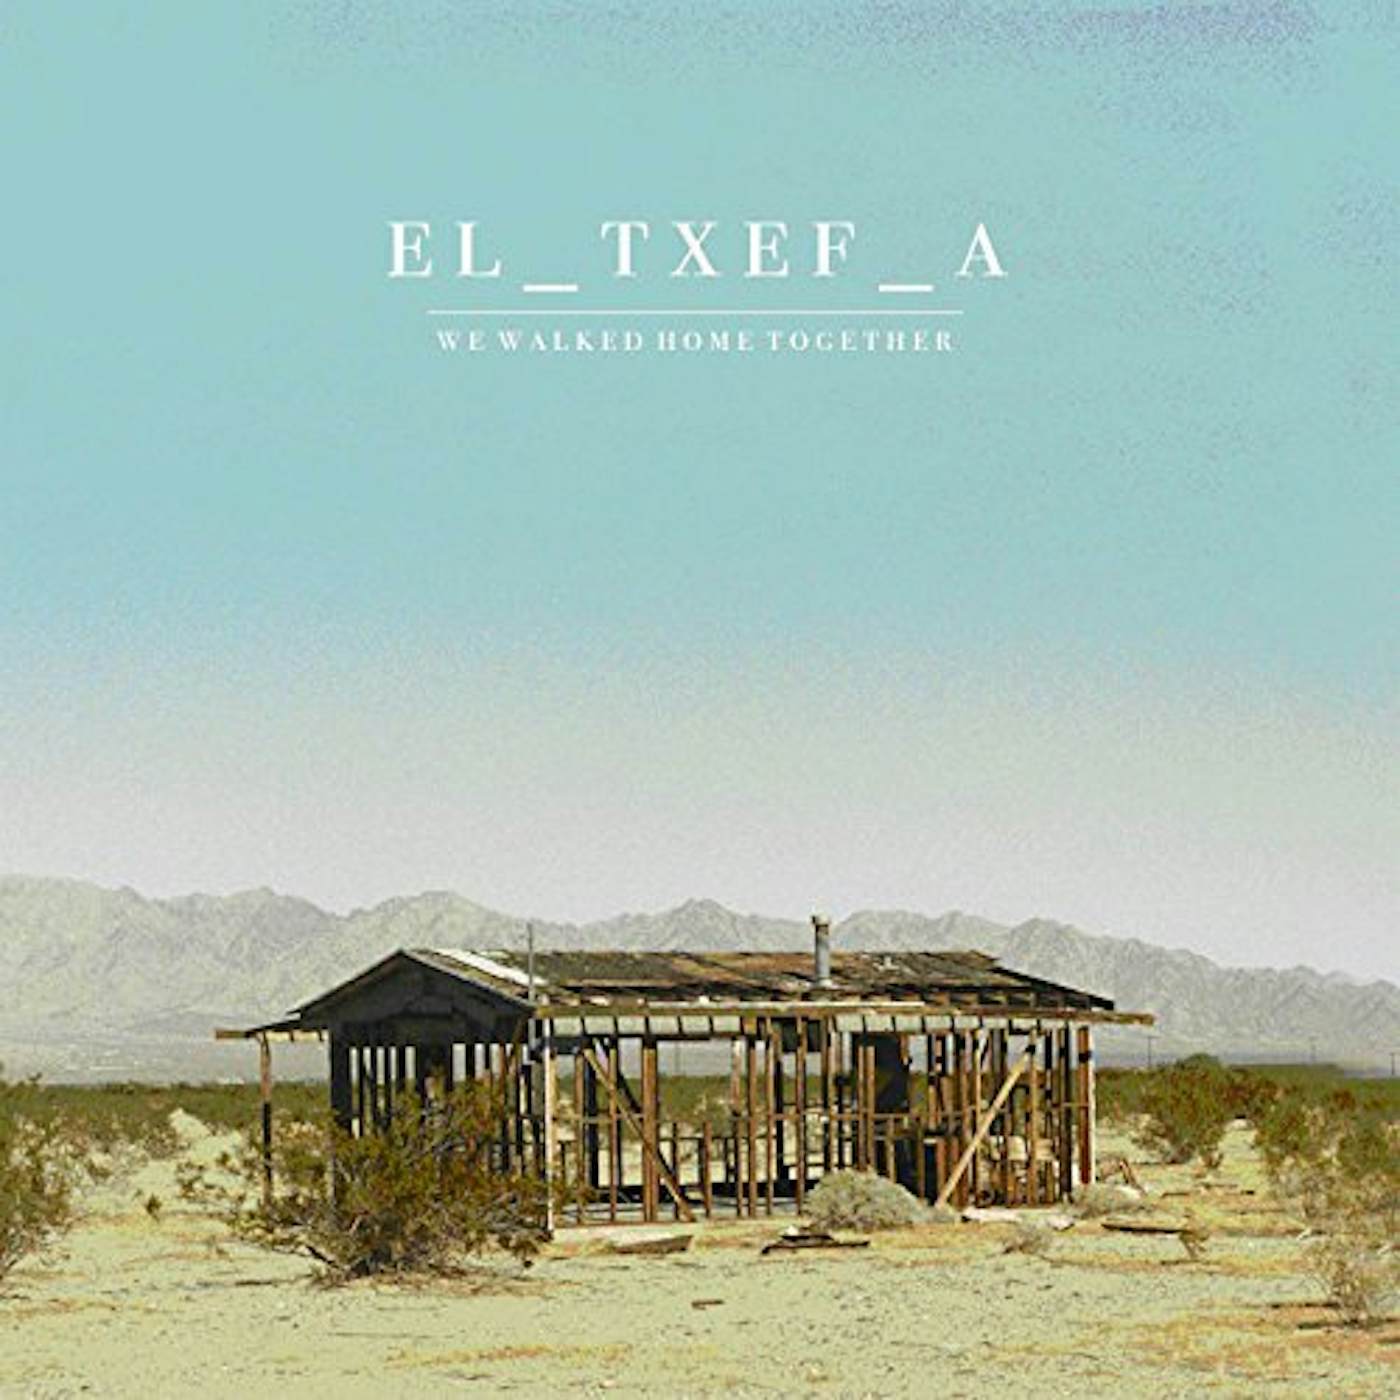 El-Txef-A We Walked Home Together Vinyl Record